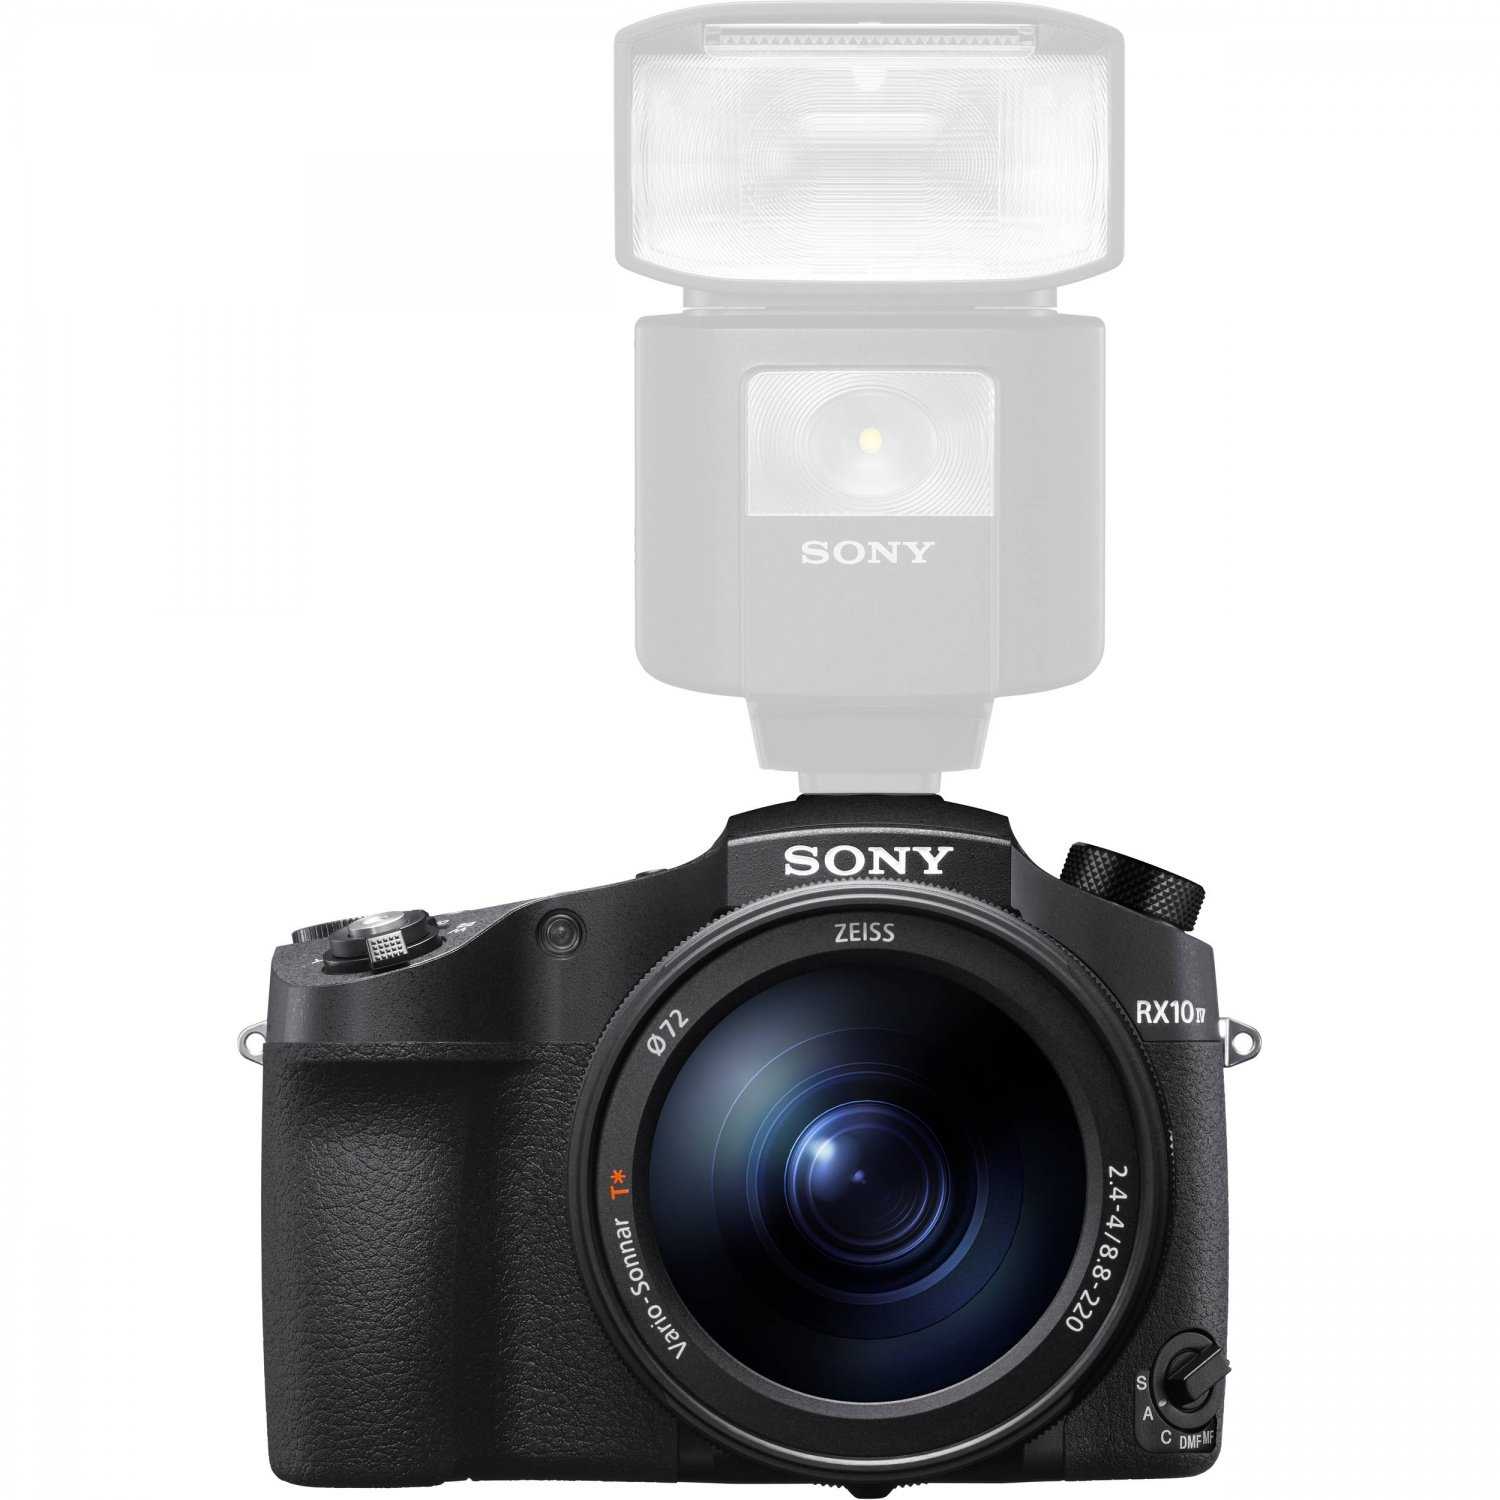 Цифровой фотоаппарат Sony DSC-RX10 - подробные характеристики обзоры видео фото Цены в интернет-магазинах где можно купить цифровую фотоаппарат Sony DSC-RX10